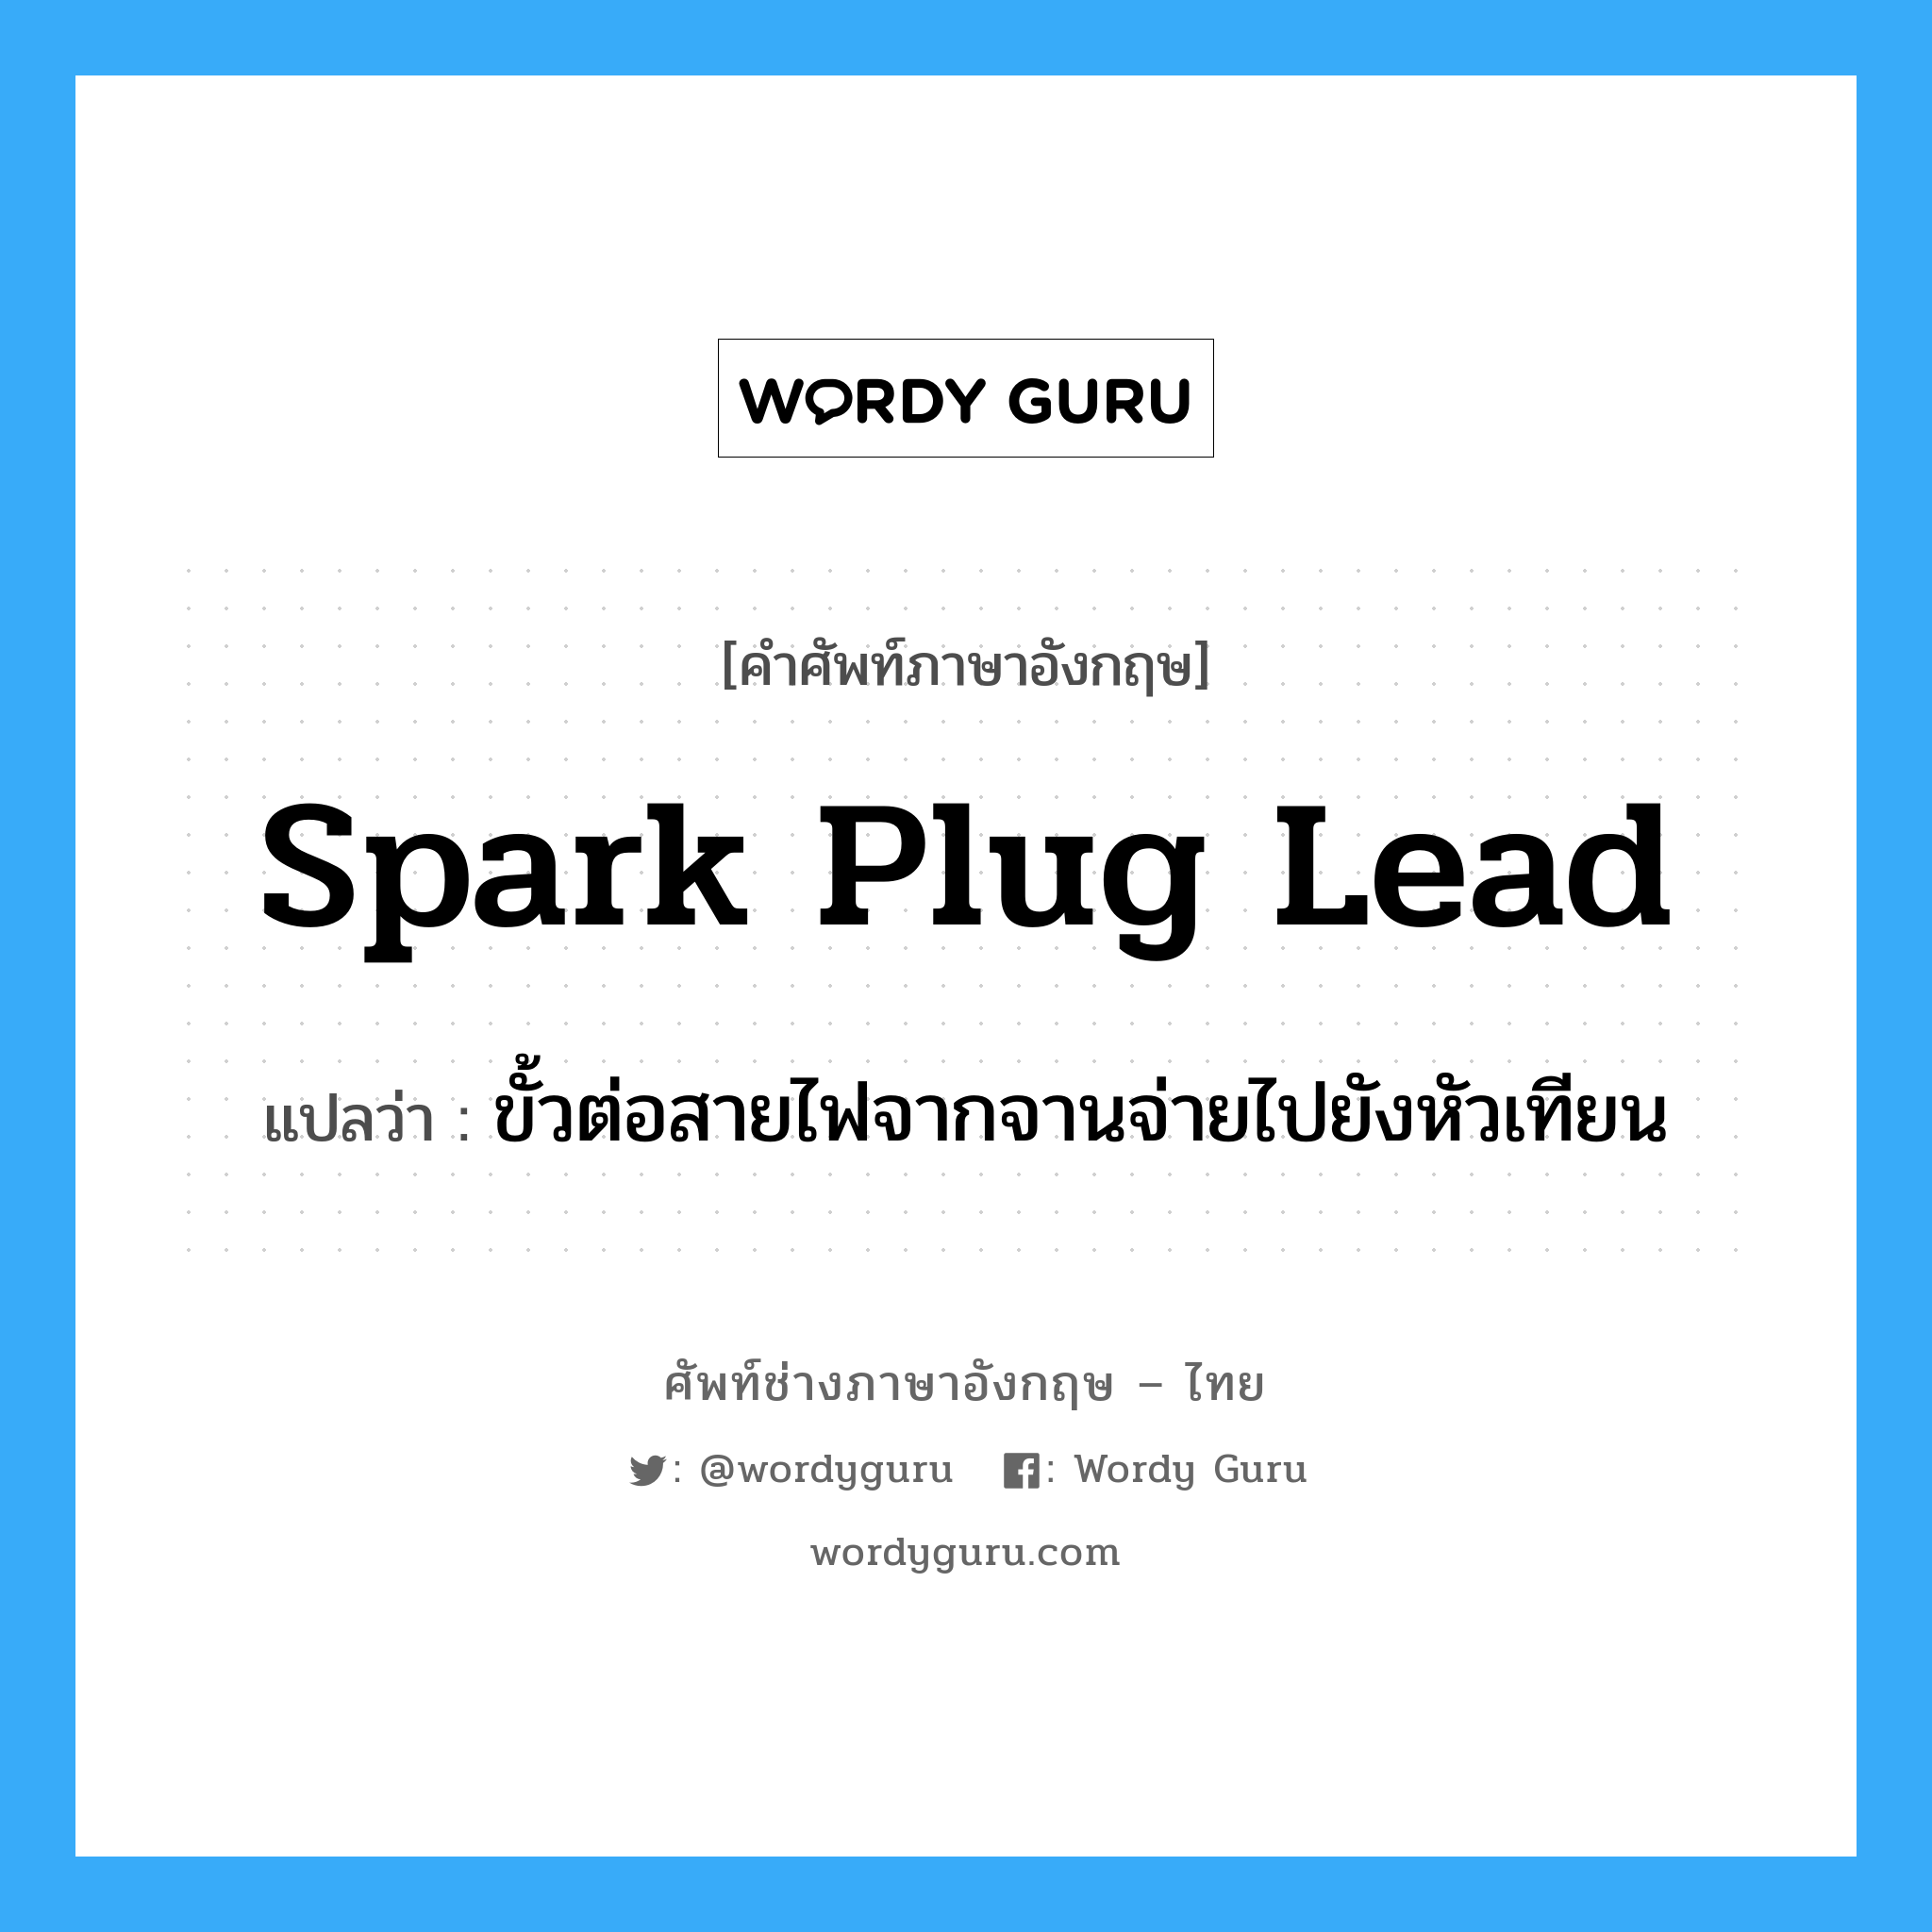 spark plug lead แปลว่า?, คำศัพท์ช่างภาษาอังกฤษ - ไทย spark plug lead คำศัพท์ภาษาอังกฤษ spark plug lead แปลว่า ขั้วต่อสายไฟจากจานจ่ายไปยังหัวเทียน